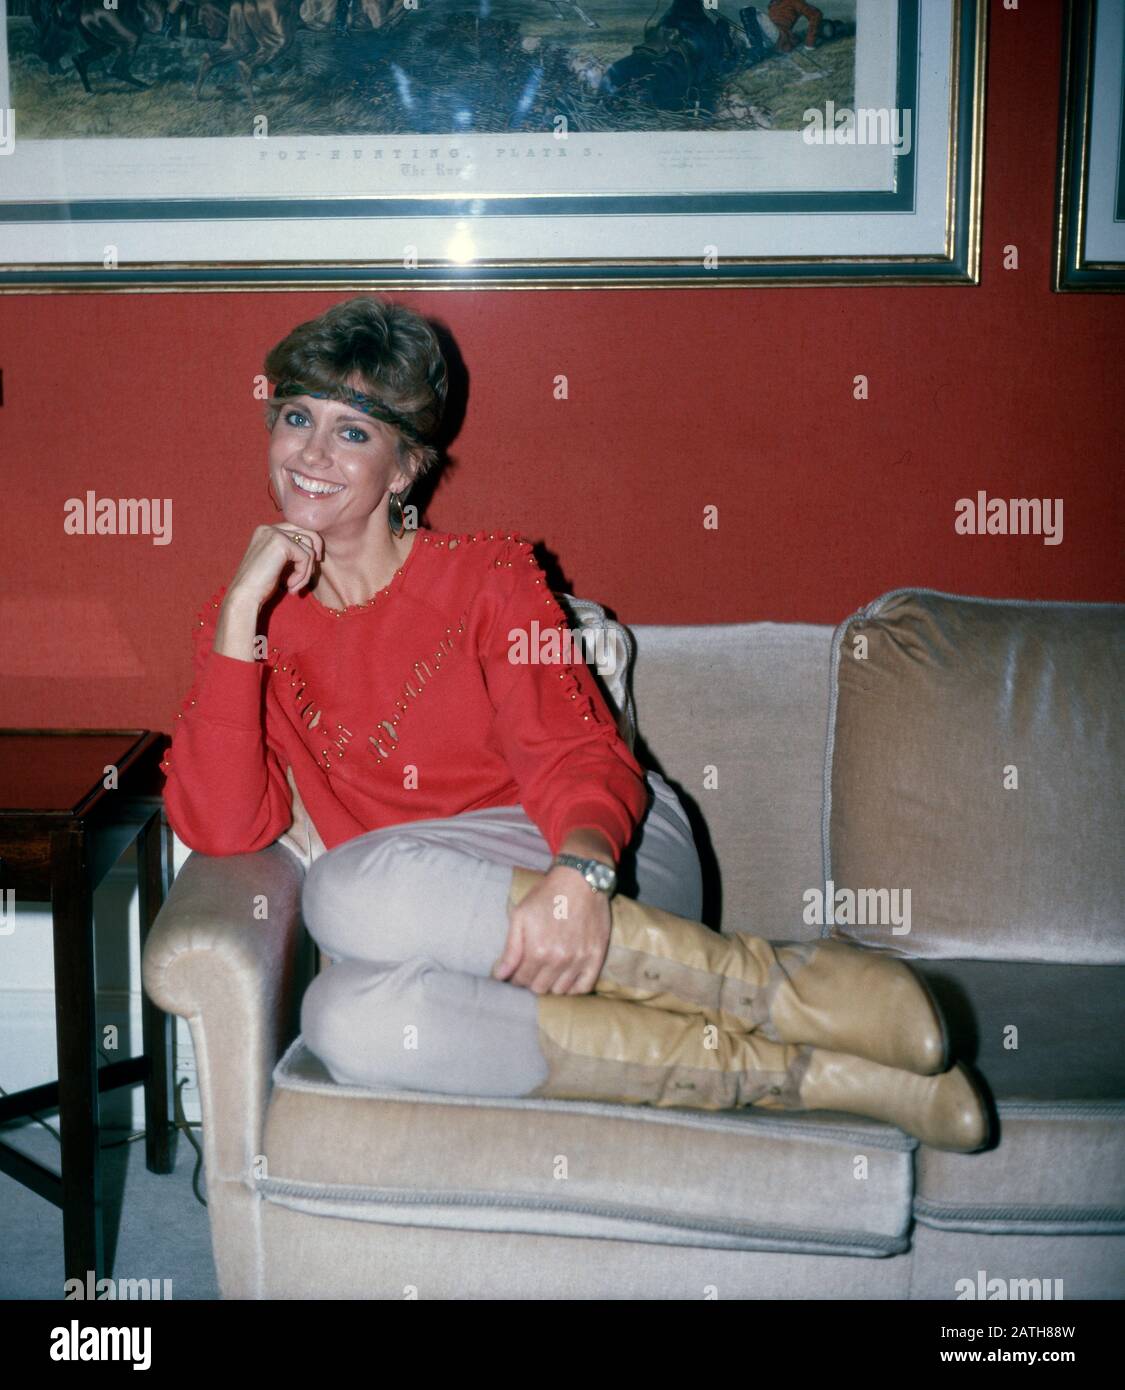 Die bretisch-australische Sängerin Olivia Newton-John positert für ein Foto a ihrem Wohnzimmer, Deutschland 1980. Il cantante britannico-australiano Olivia Newton-John è ritratto su una foto, Germania 1980. Foto Stock